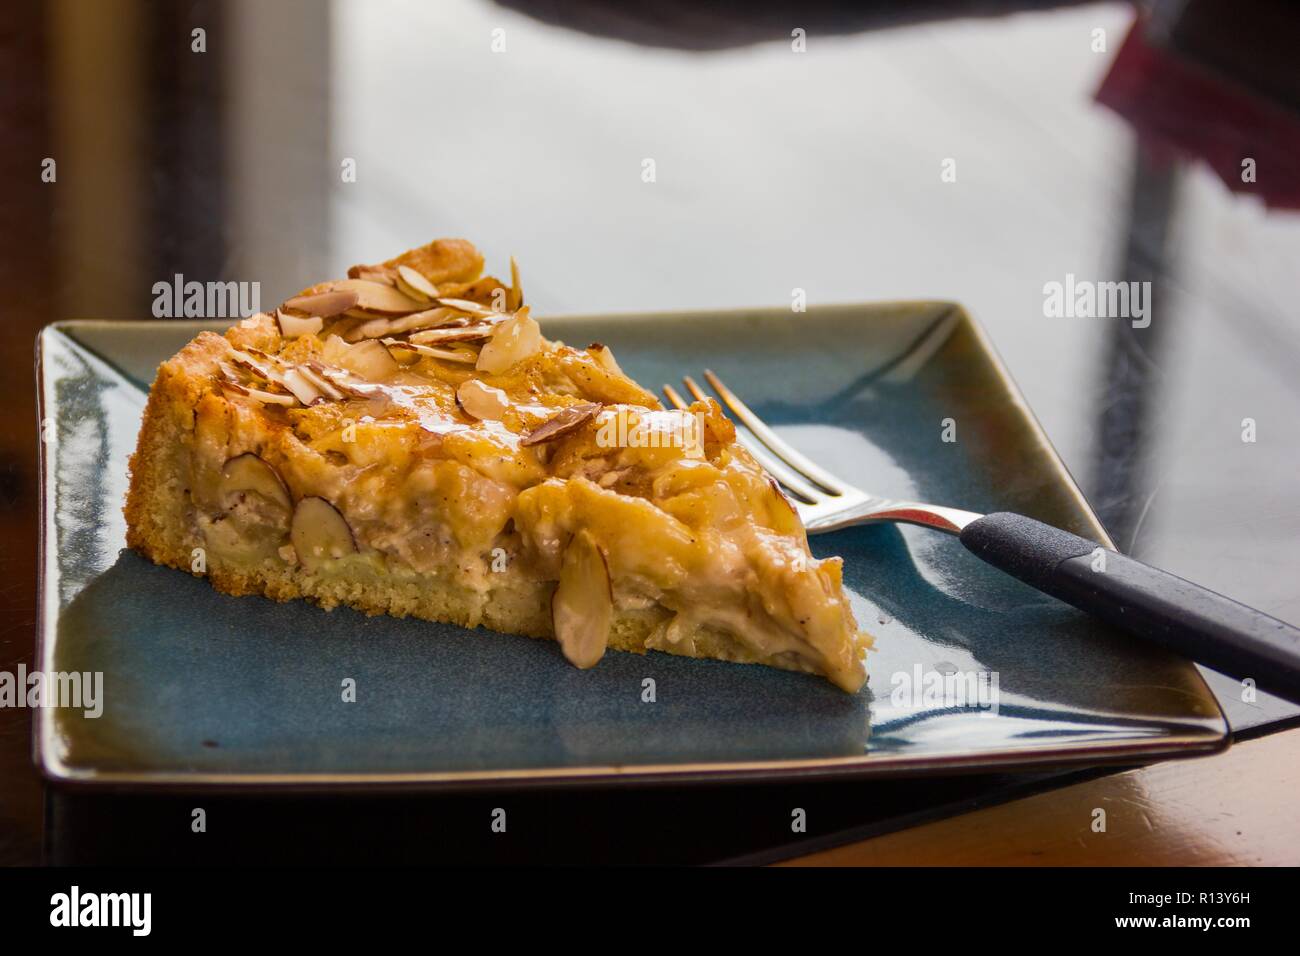 Délicieux gâteau aux amandes apple kuchen et la fourche sur plaque carrée bleue. Dessert, concepts d'épicerie fine Banque D'Images